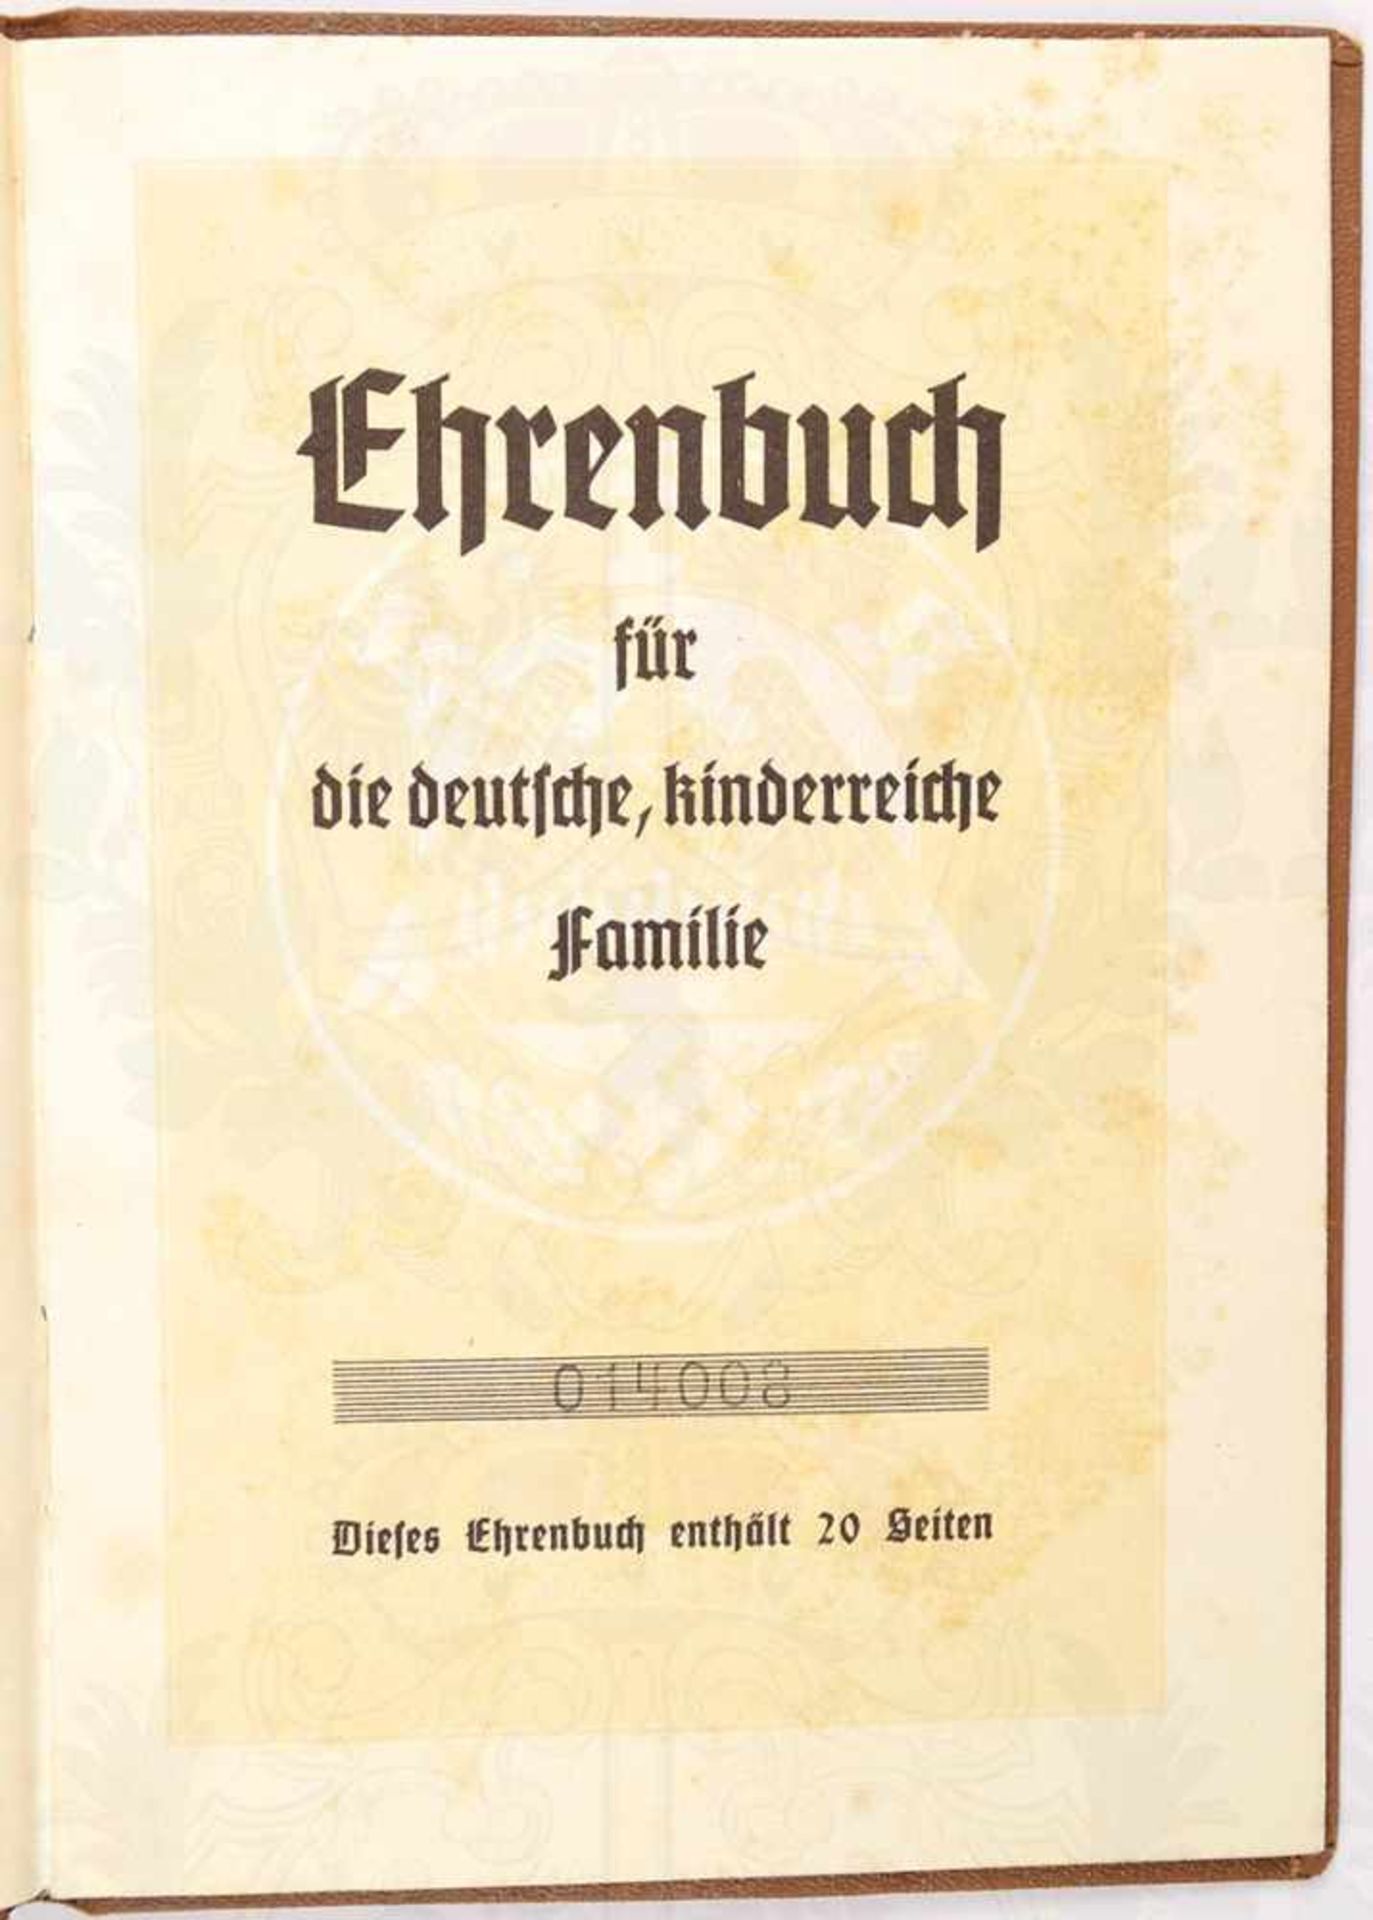 EHRENBUCH FÜR KINDERREICHE FAMILIEN, ausgestellt Berlin 23.9.1938, für eine Familie in Lippstadt mit